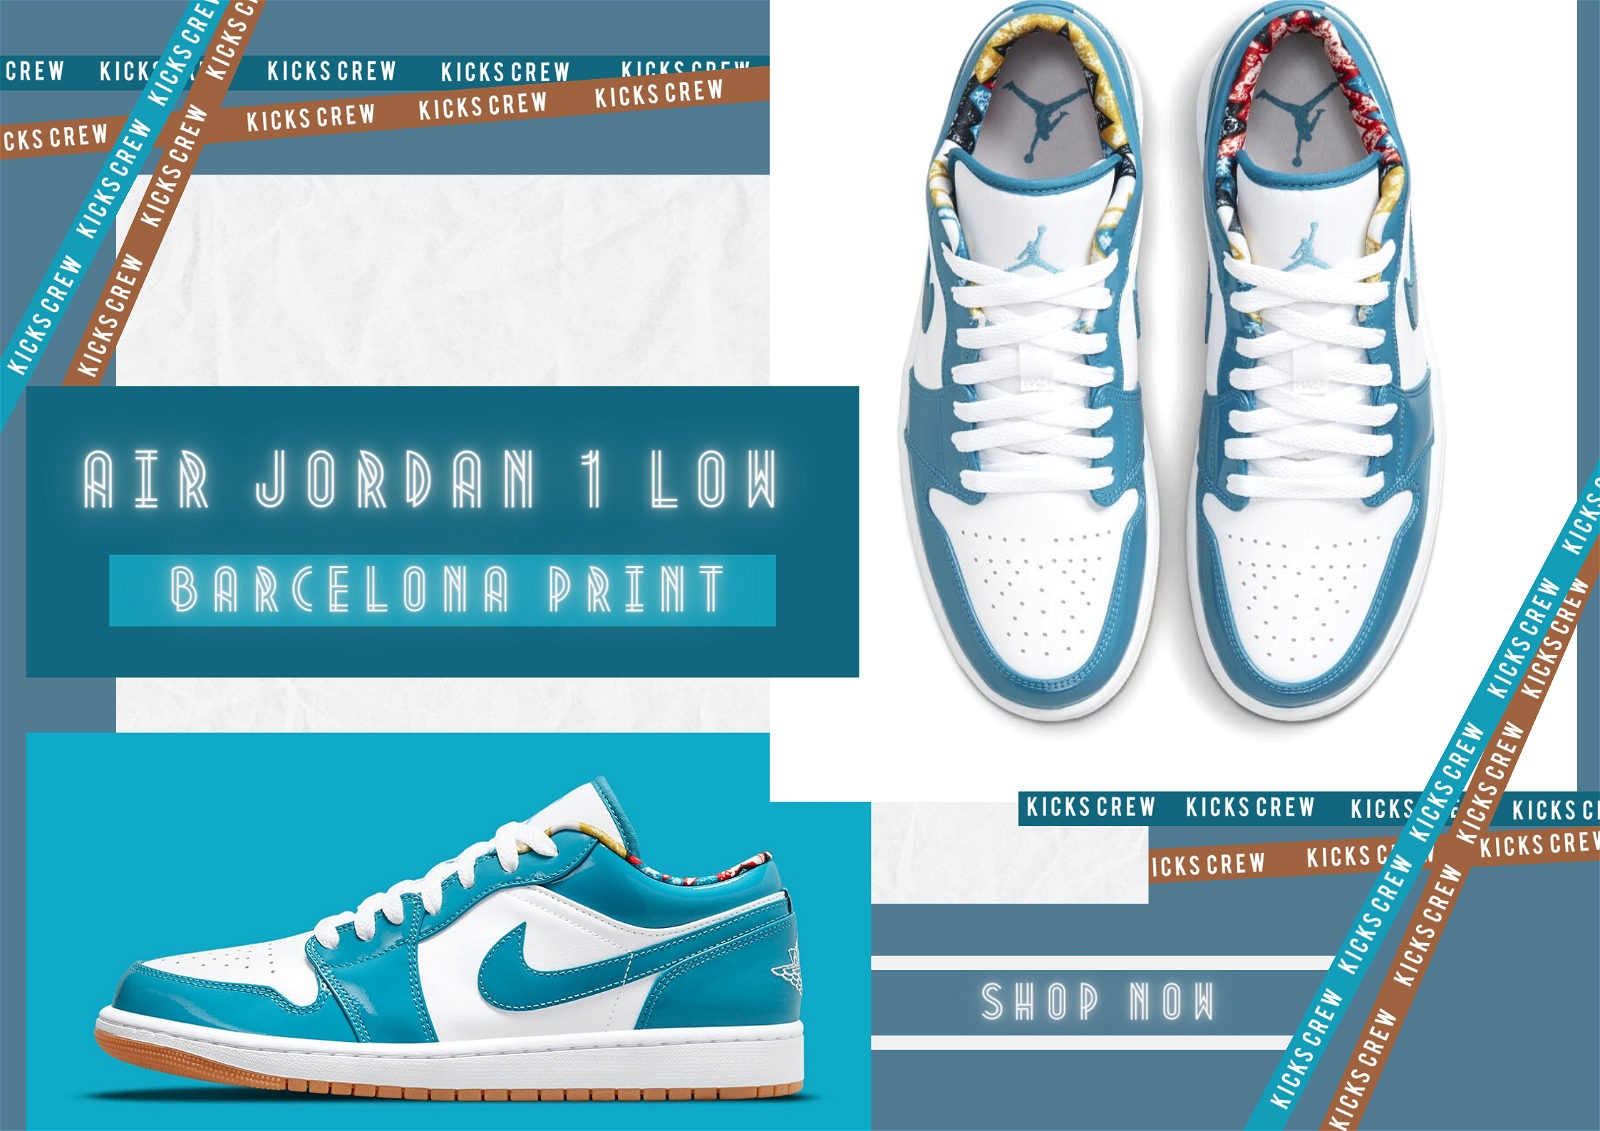 Air Jordan 1 Low Top Shoes - KICKS CREW